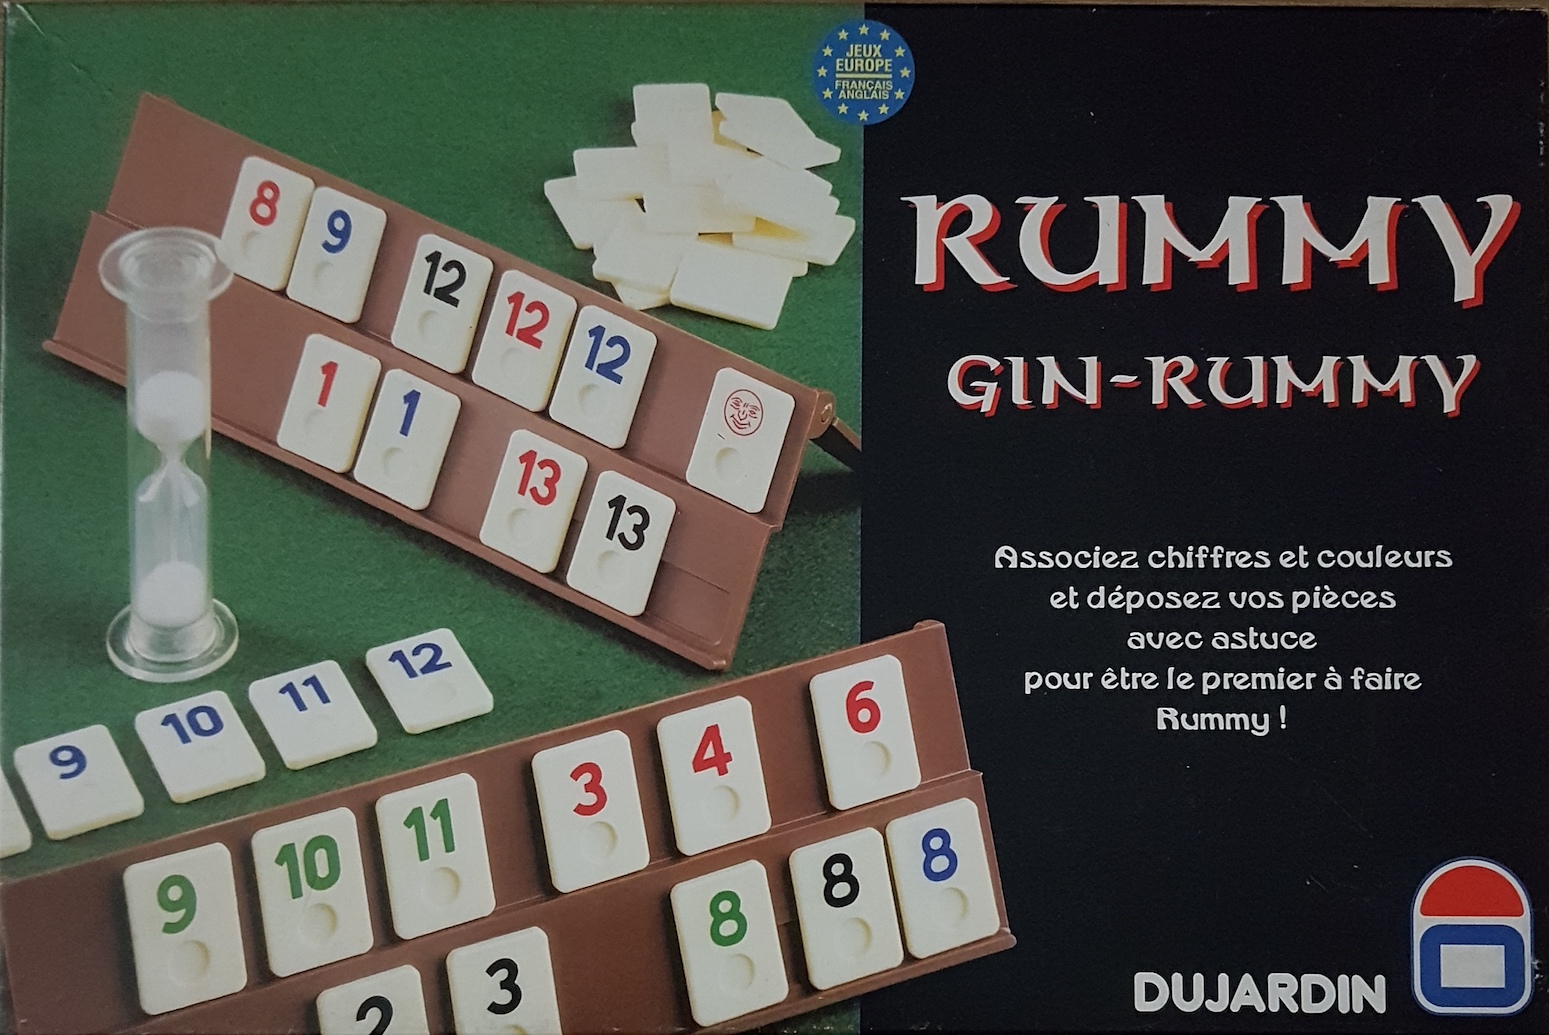 Rummy - Gin rummy